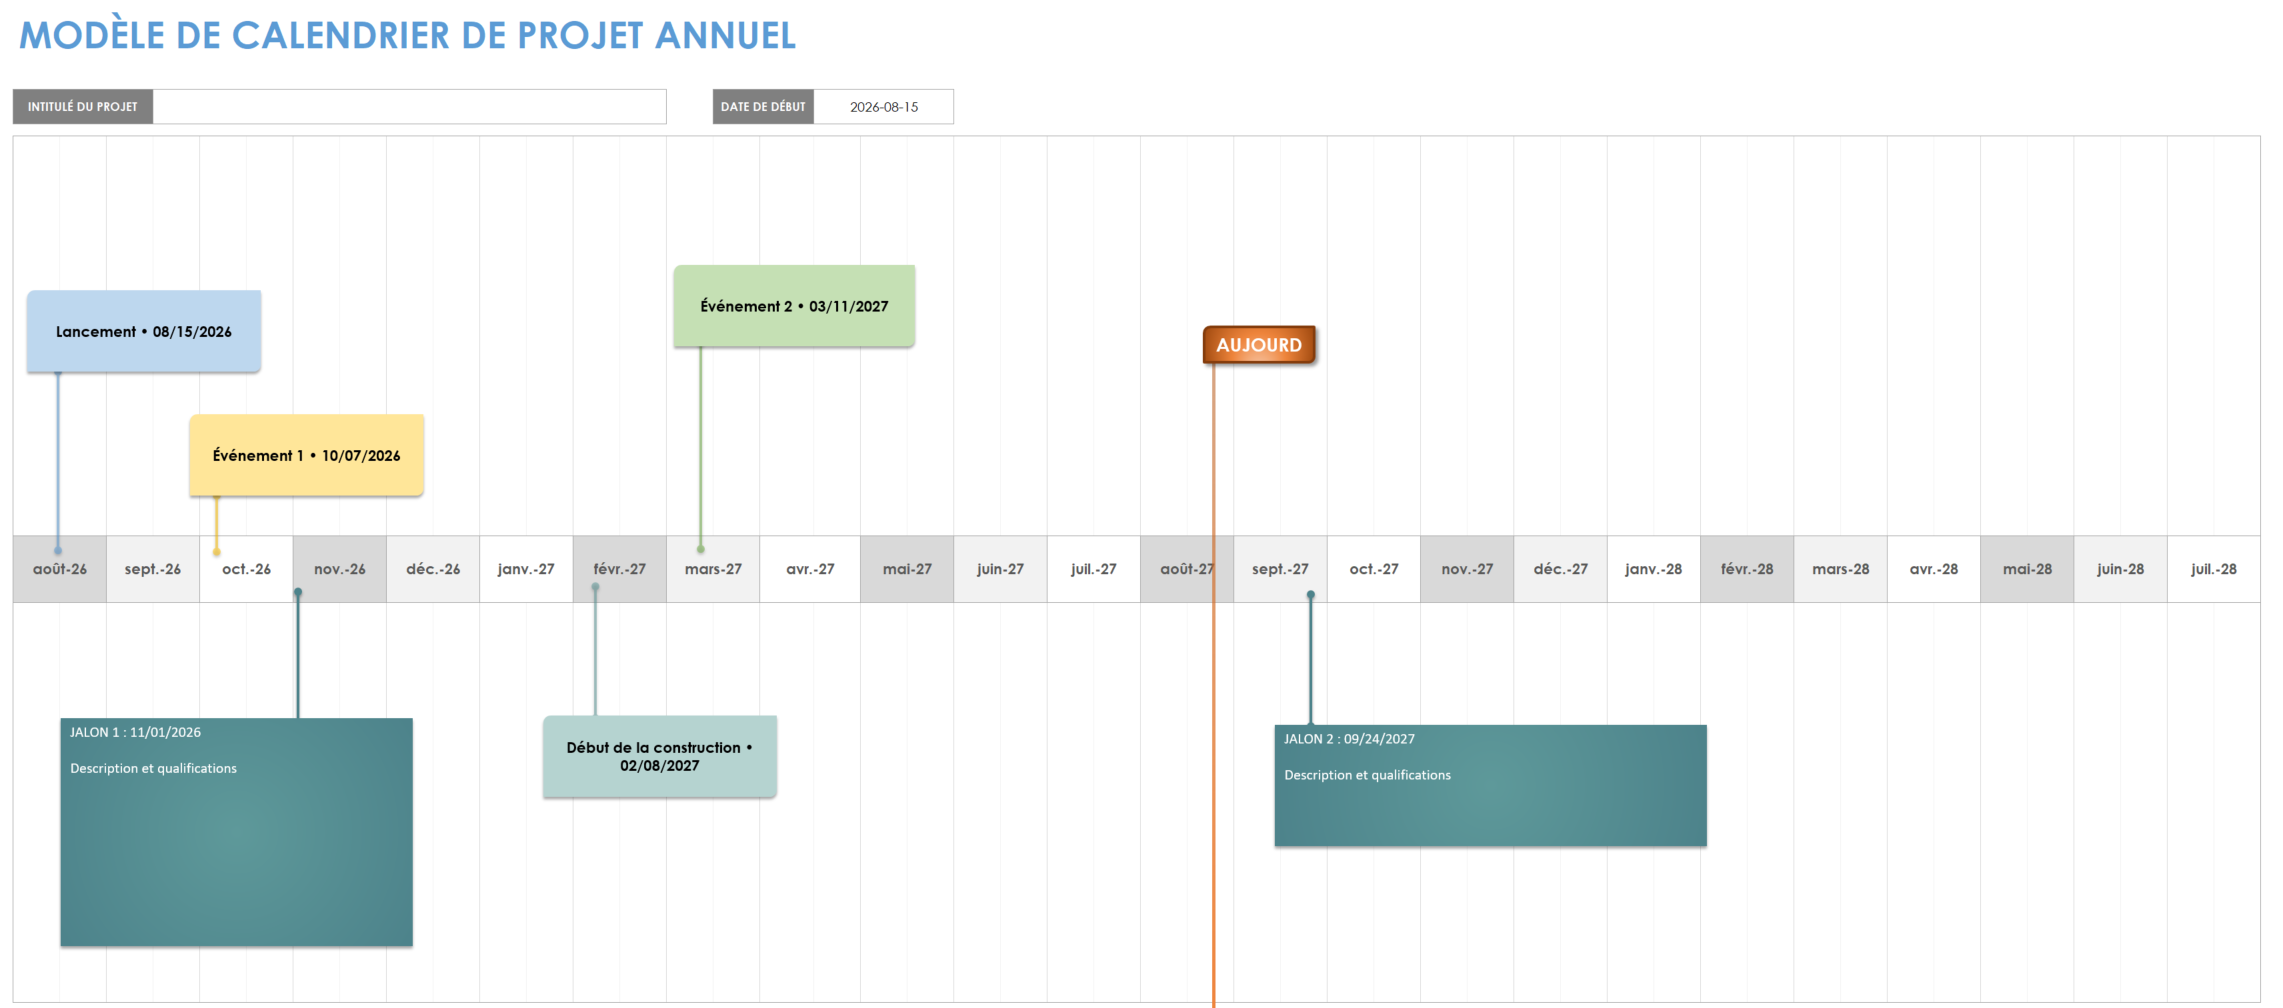 Modèle de calendrier annuel du projet